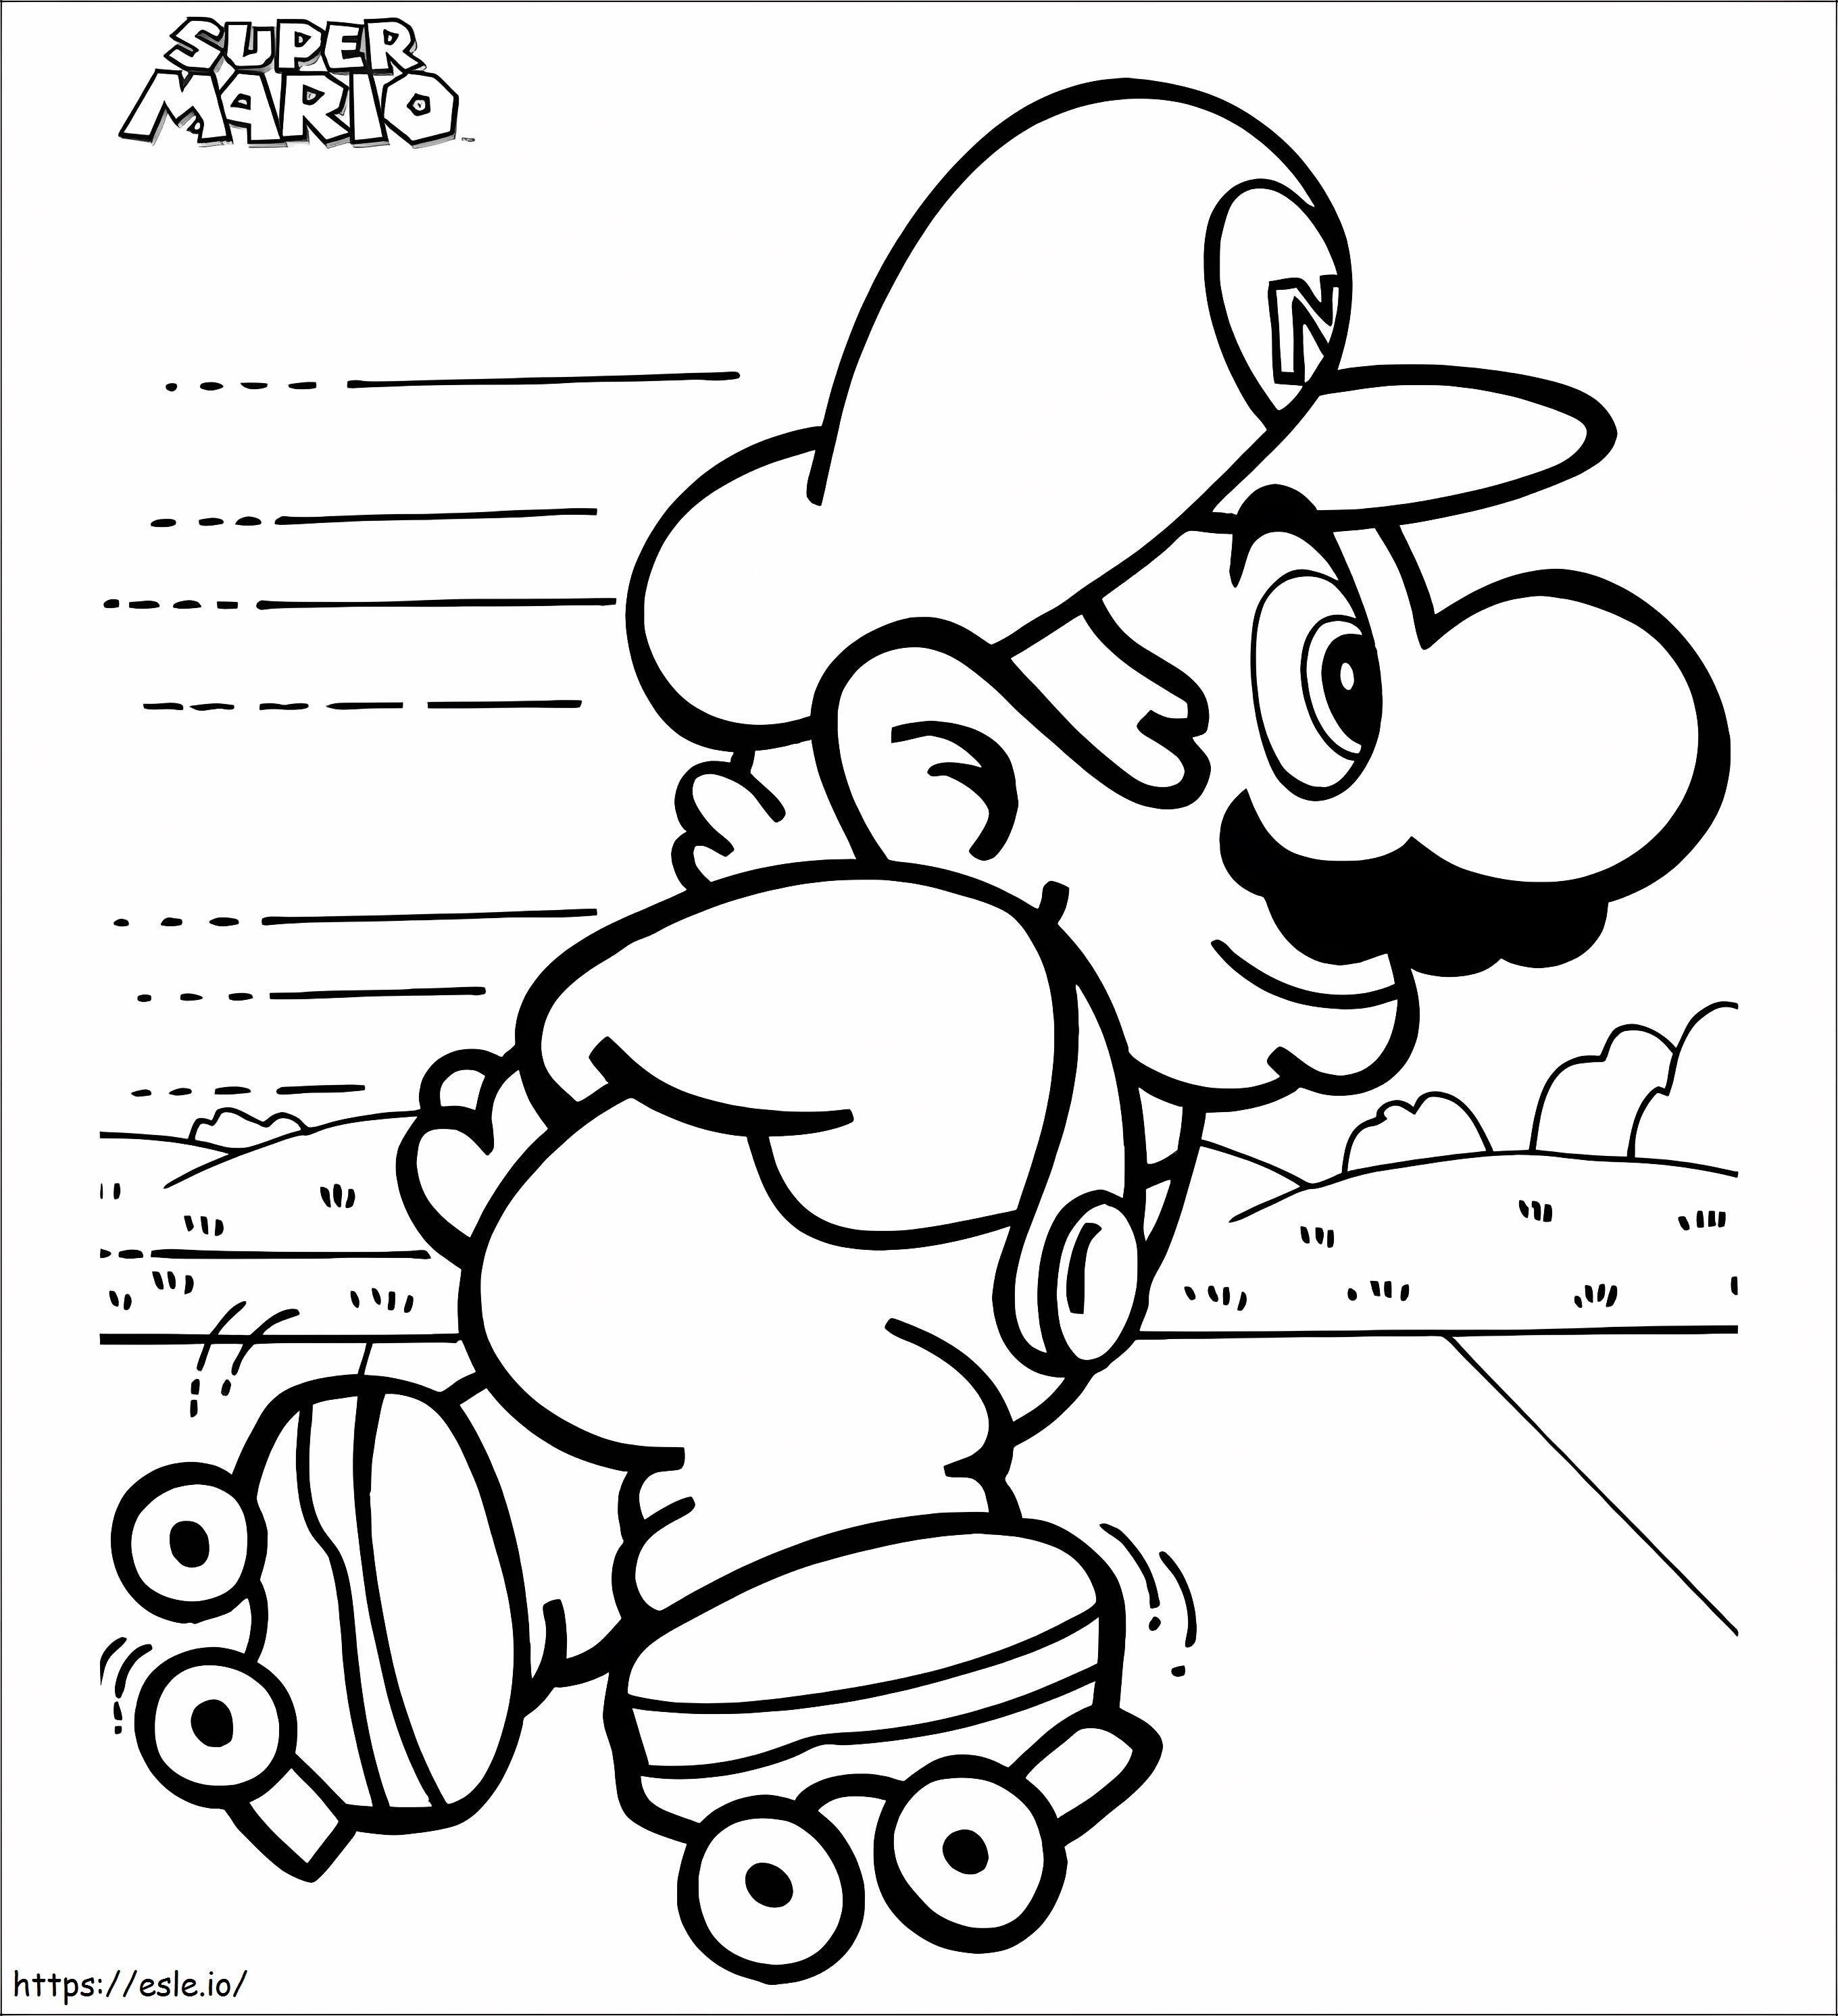 Łyżwiarstwo Mario kolorowanka